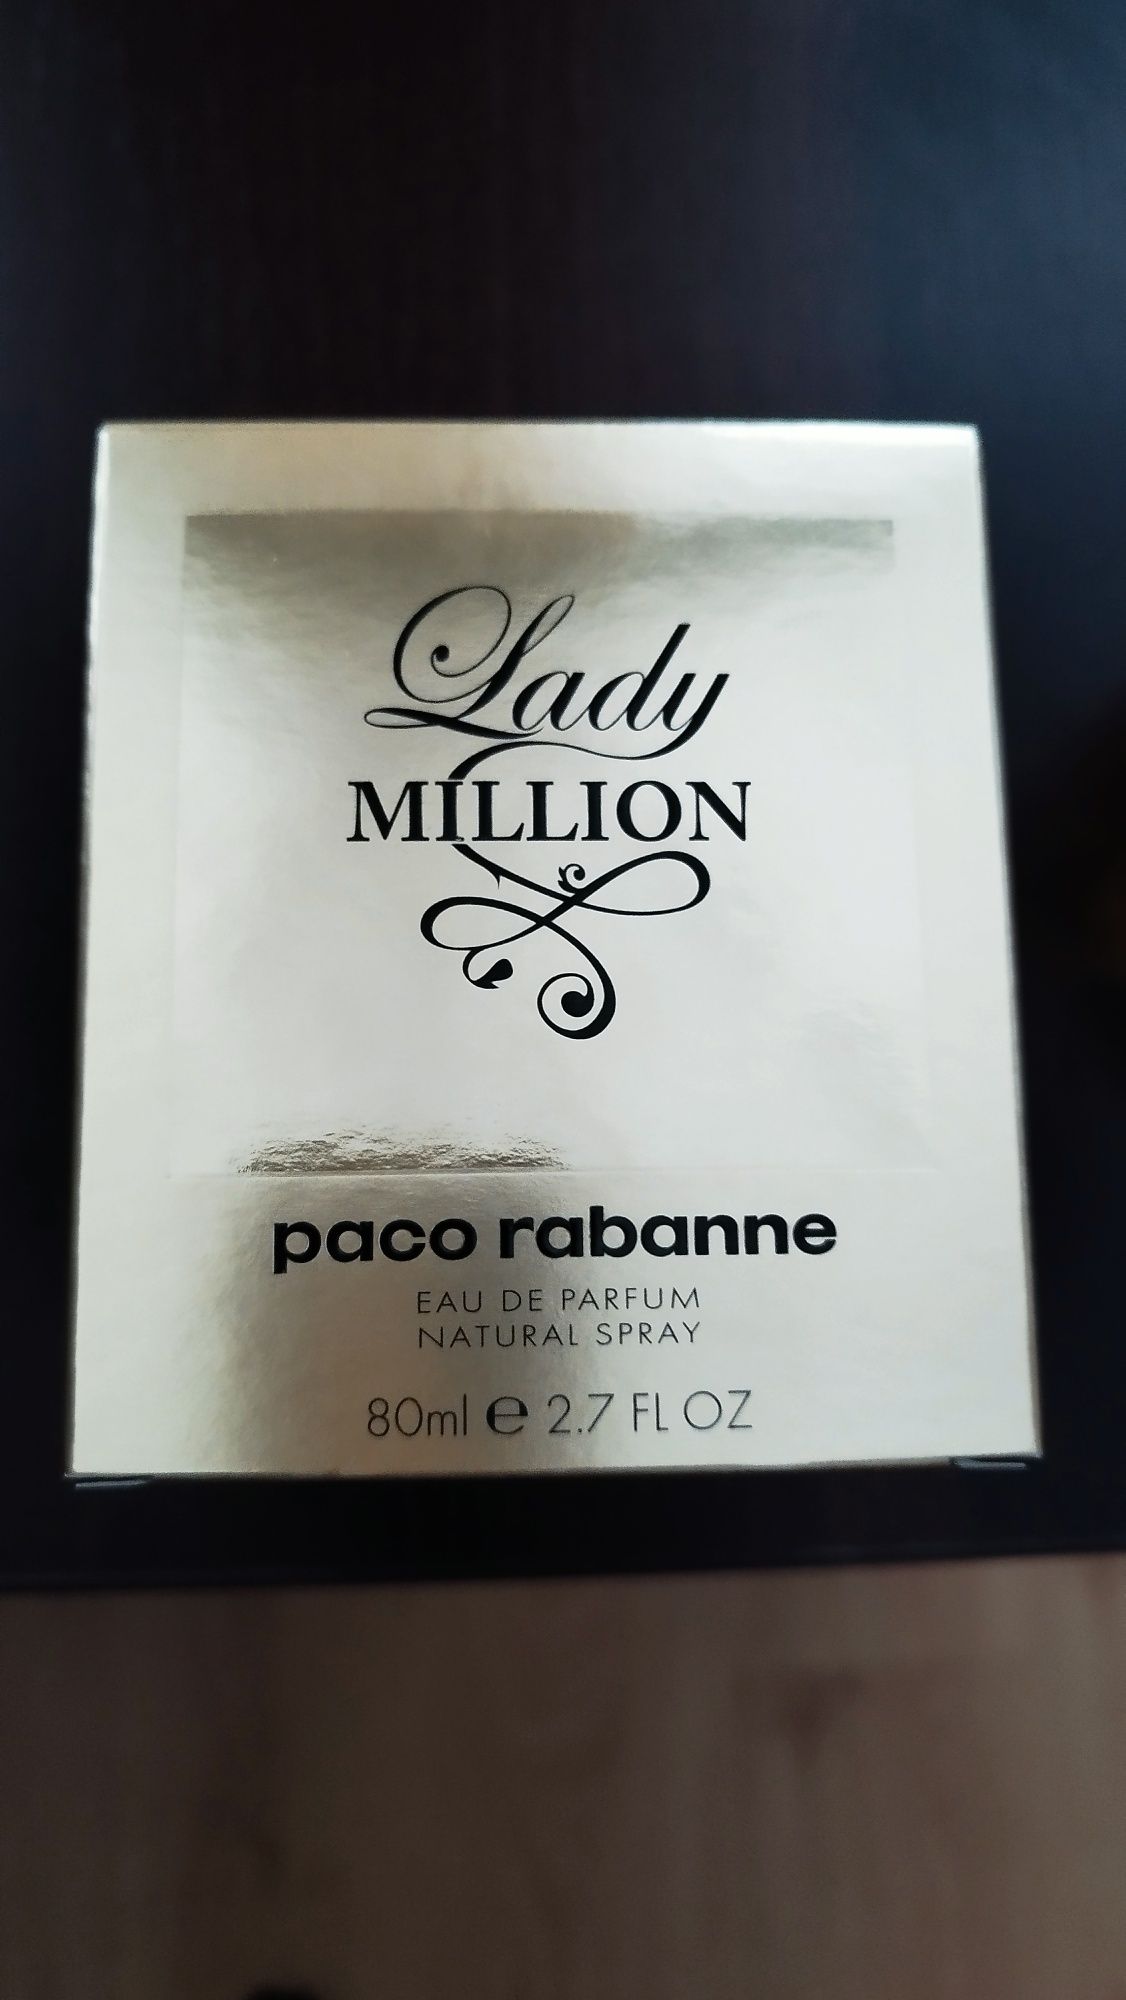 Witam! Mam do sprzedania oryginalny perfum Paco Rabanne Lady Million